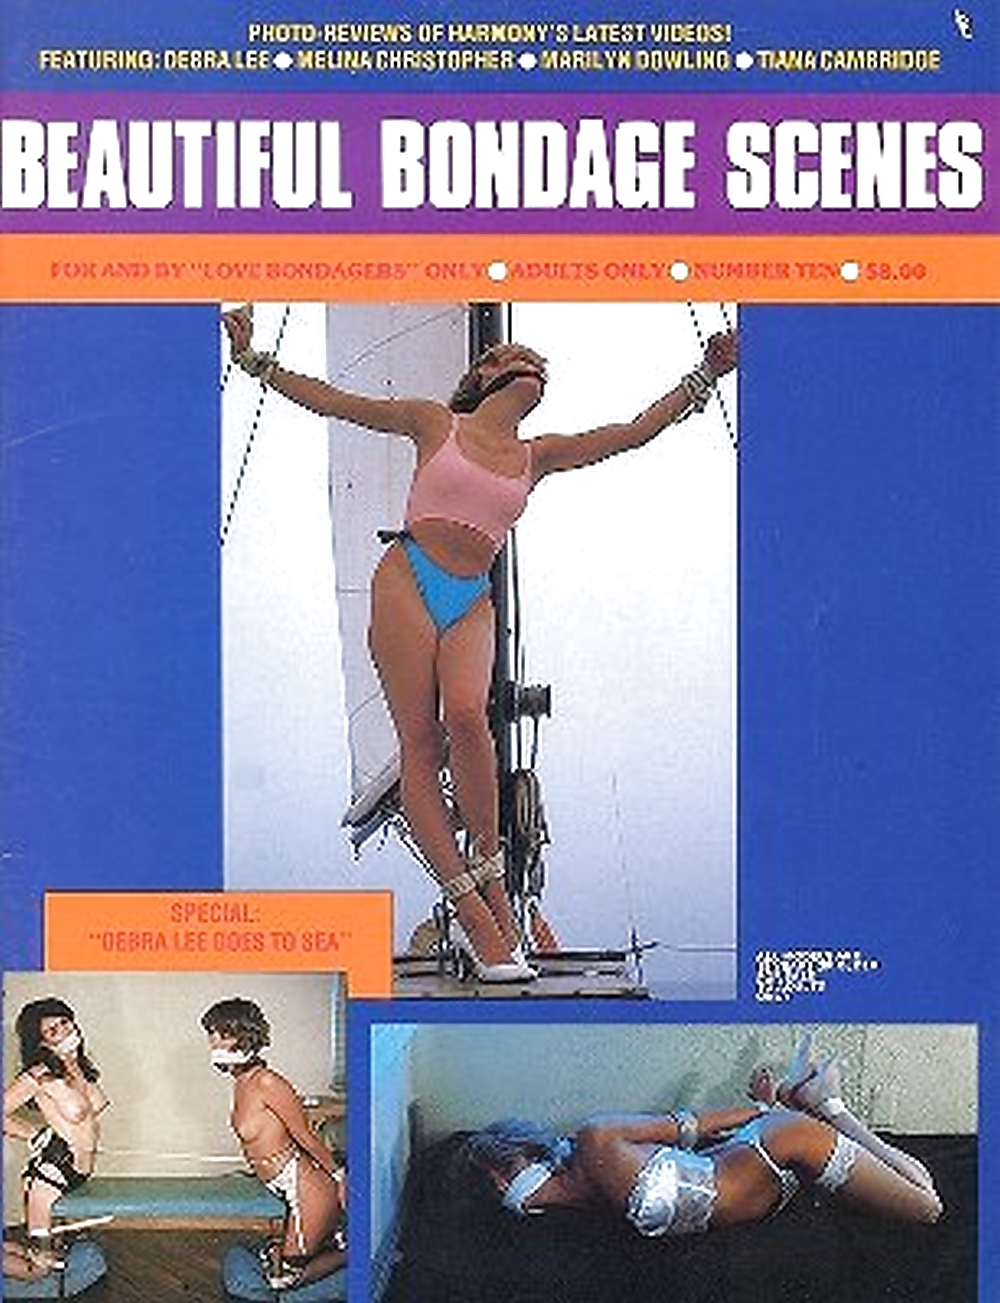 Le mie riviste bondage d'epoca (copertine)
 #22184395